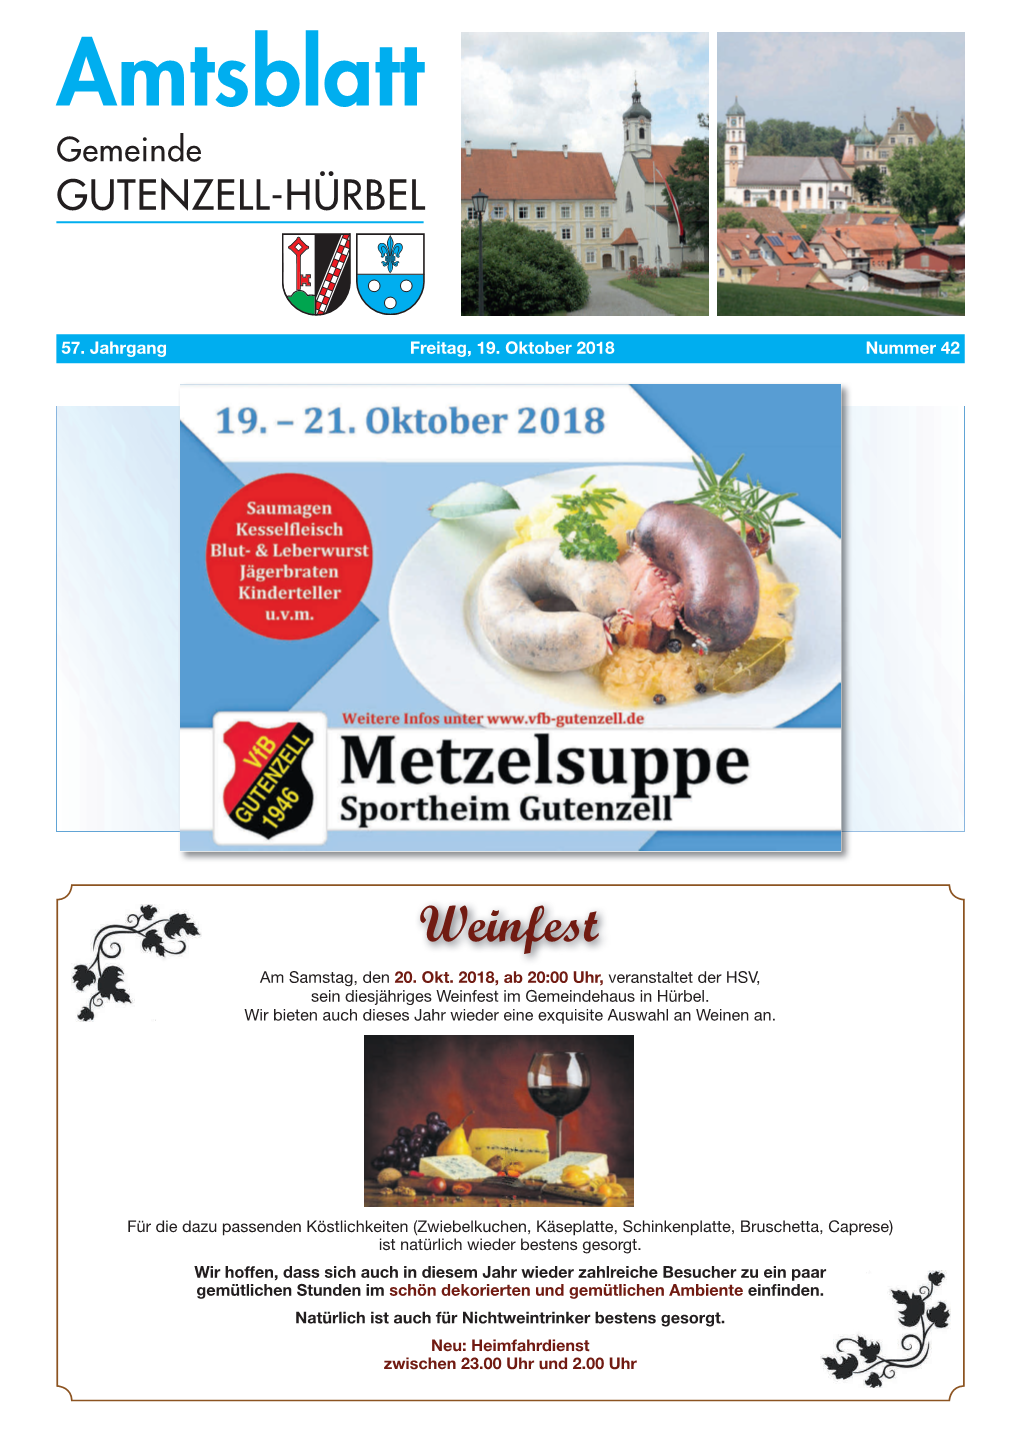 Amtsblatt Gemeinde GUTENZELL-HÜRBEL